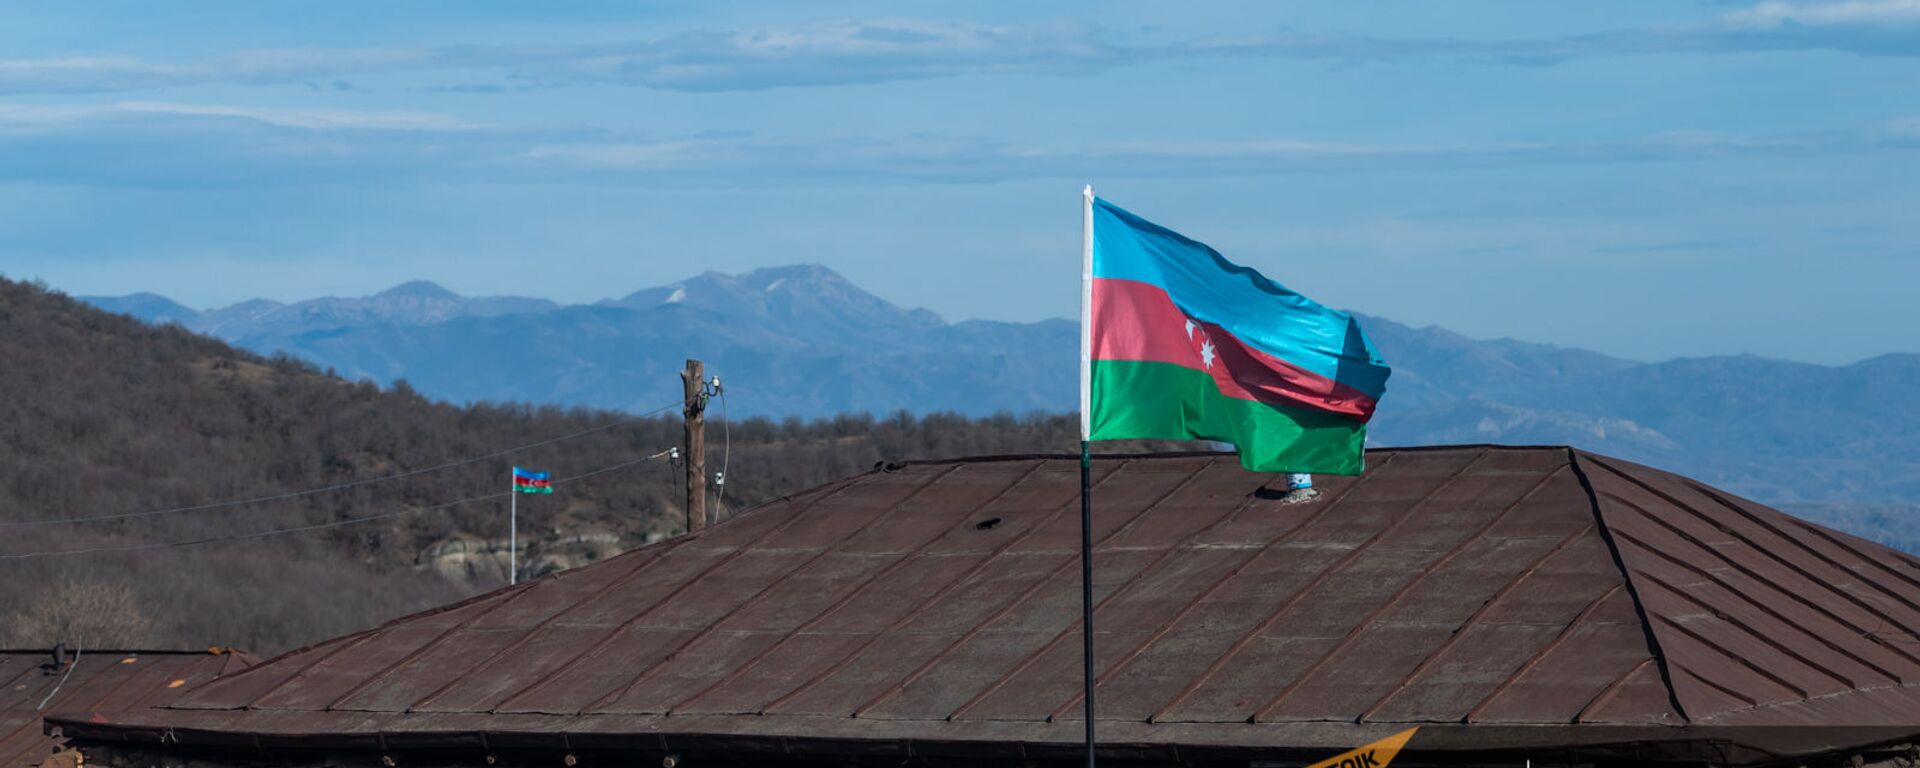 Азербайджанские флаги в селе Шурнух Сюникской области - Sputnik Армения, 1920, 13.05.2021